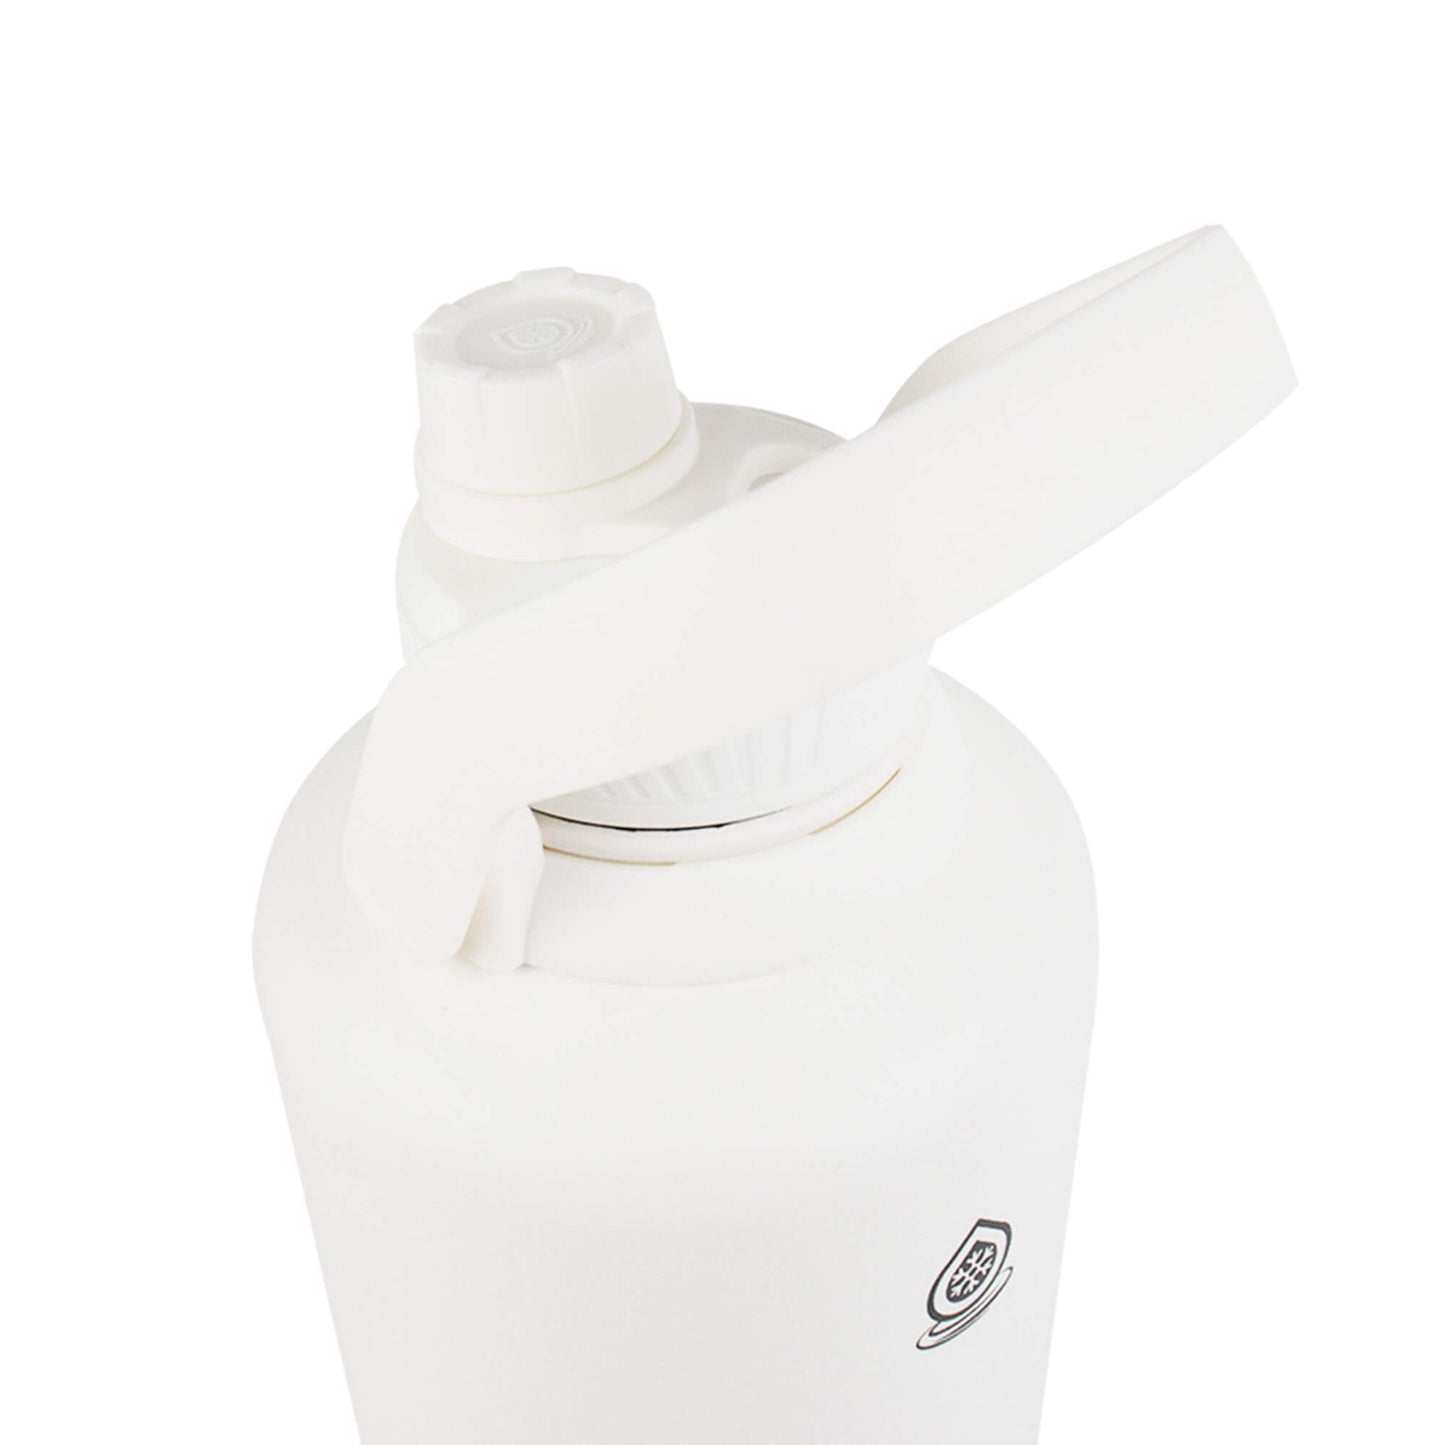 Aquaflask Original Vacuum Insulated Water Bottles 1890mL (64oz)